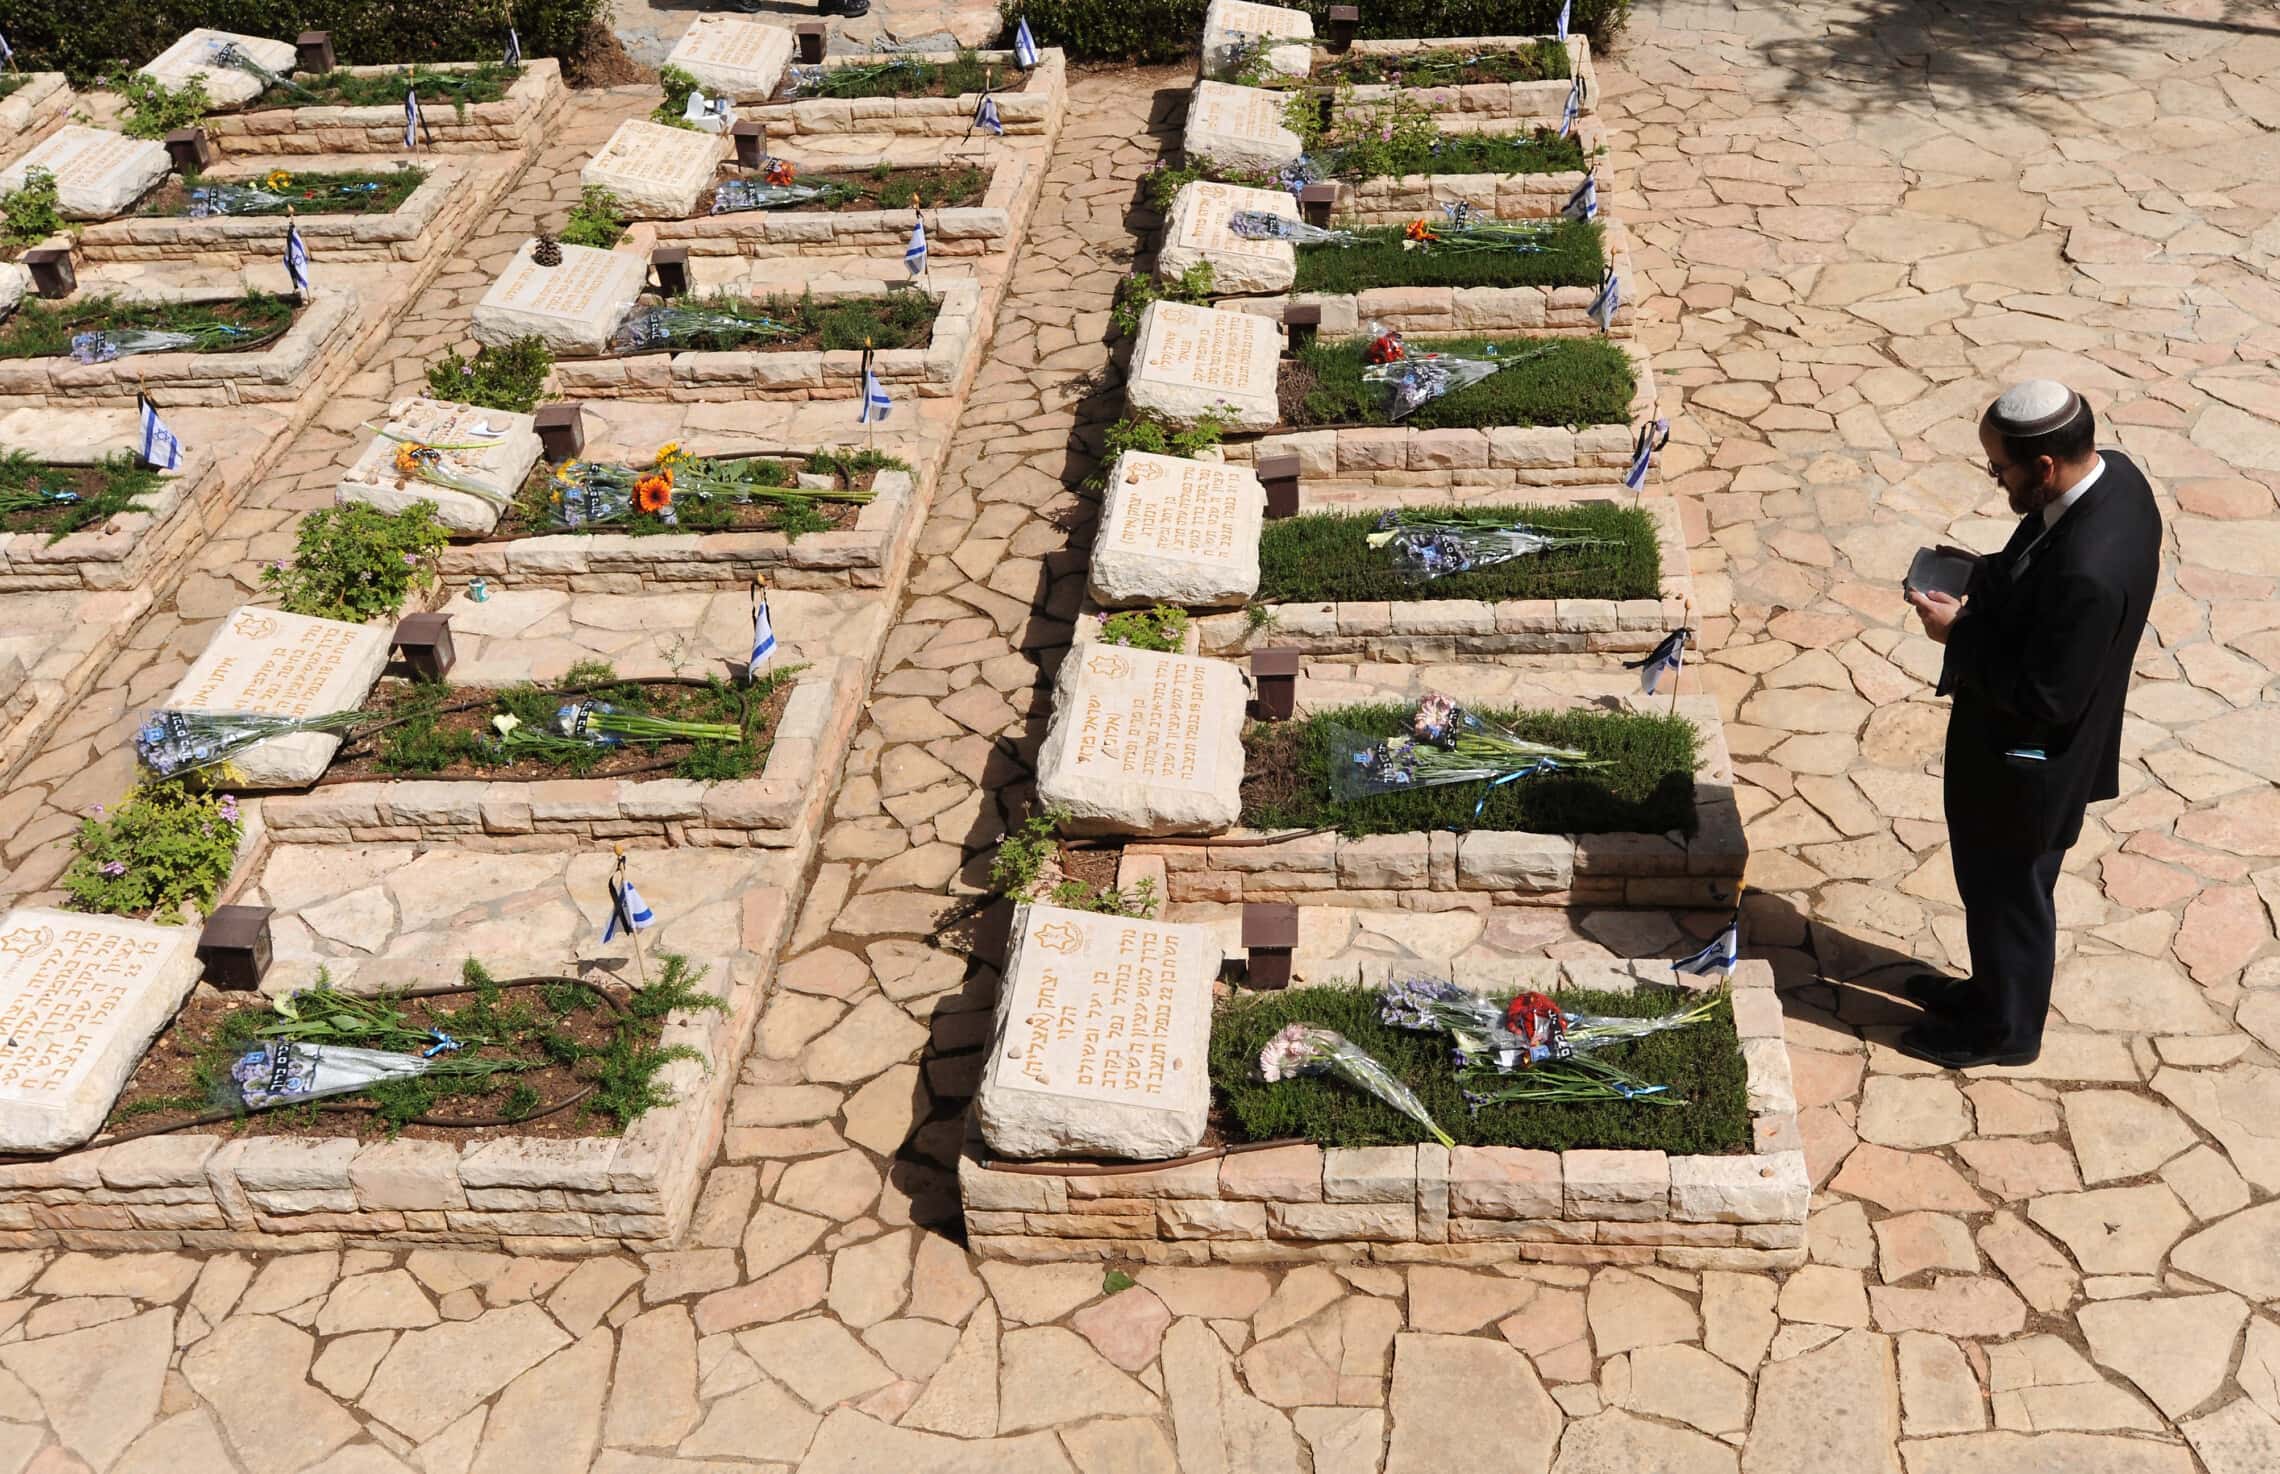 בית הקברות הצבאי בהר הרצל, 19 באפריל 2010; תצלום ארכיון &#8211; למצולמים אין קשר לדיווח (צילום: גילי יערי, פלאש 90)